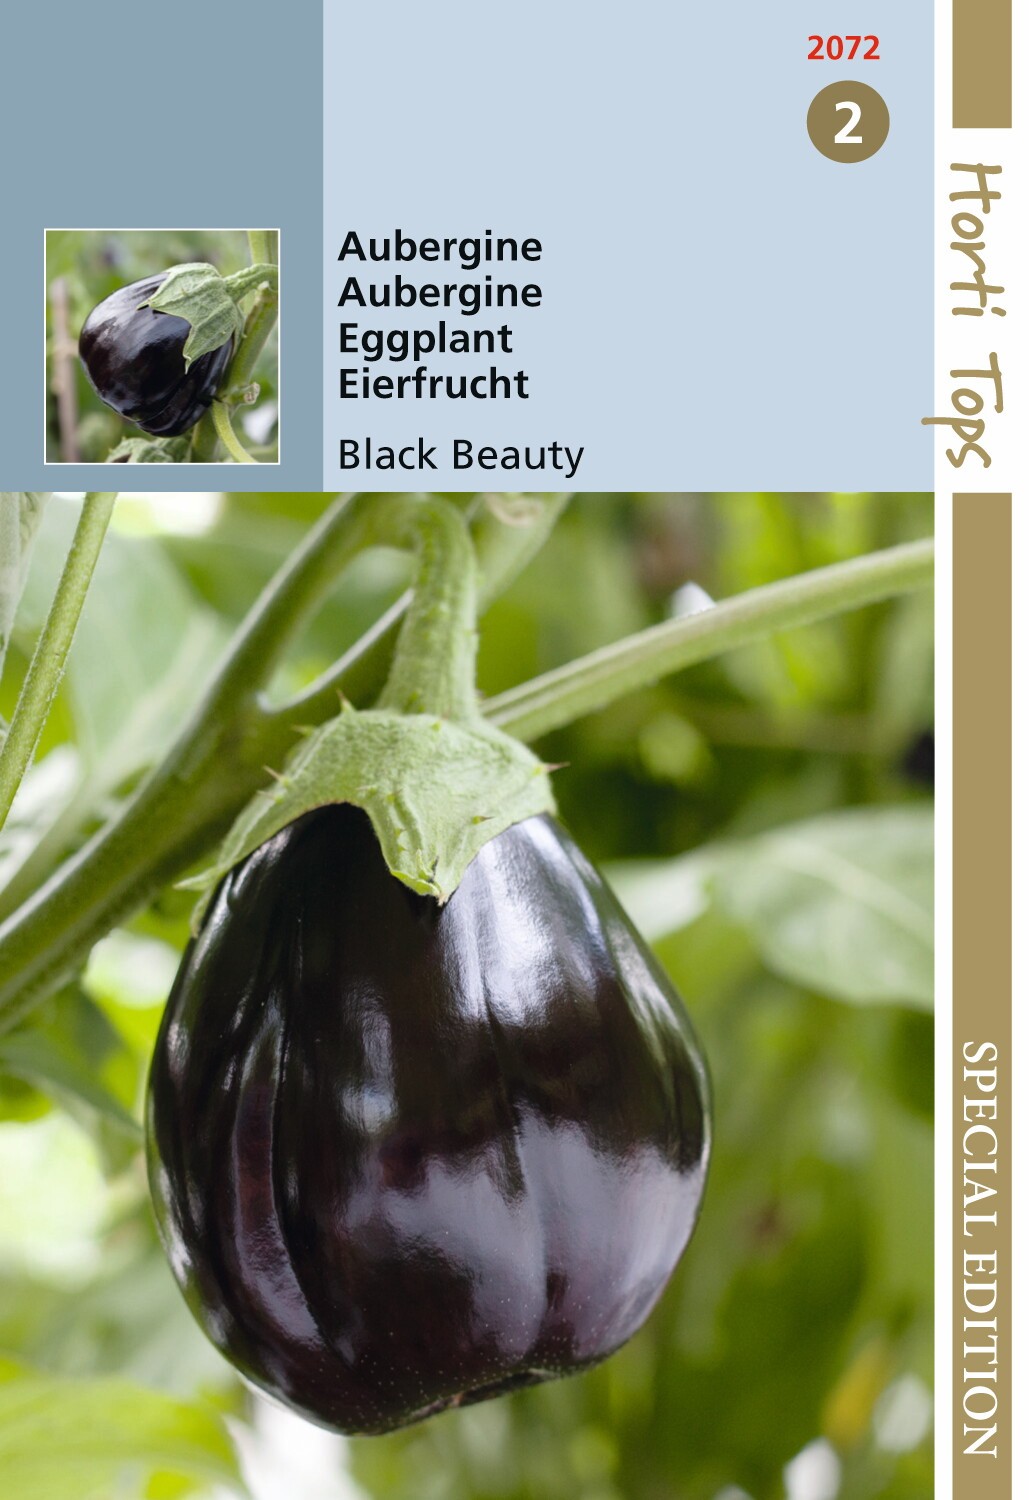 Hortitops zaden - Aubergine Black Beauty 1 gram